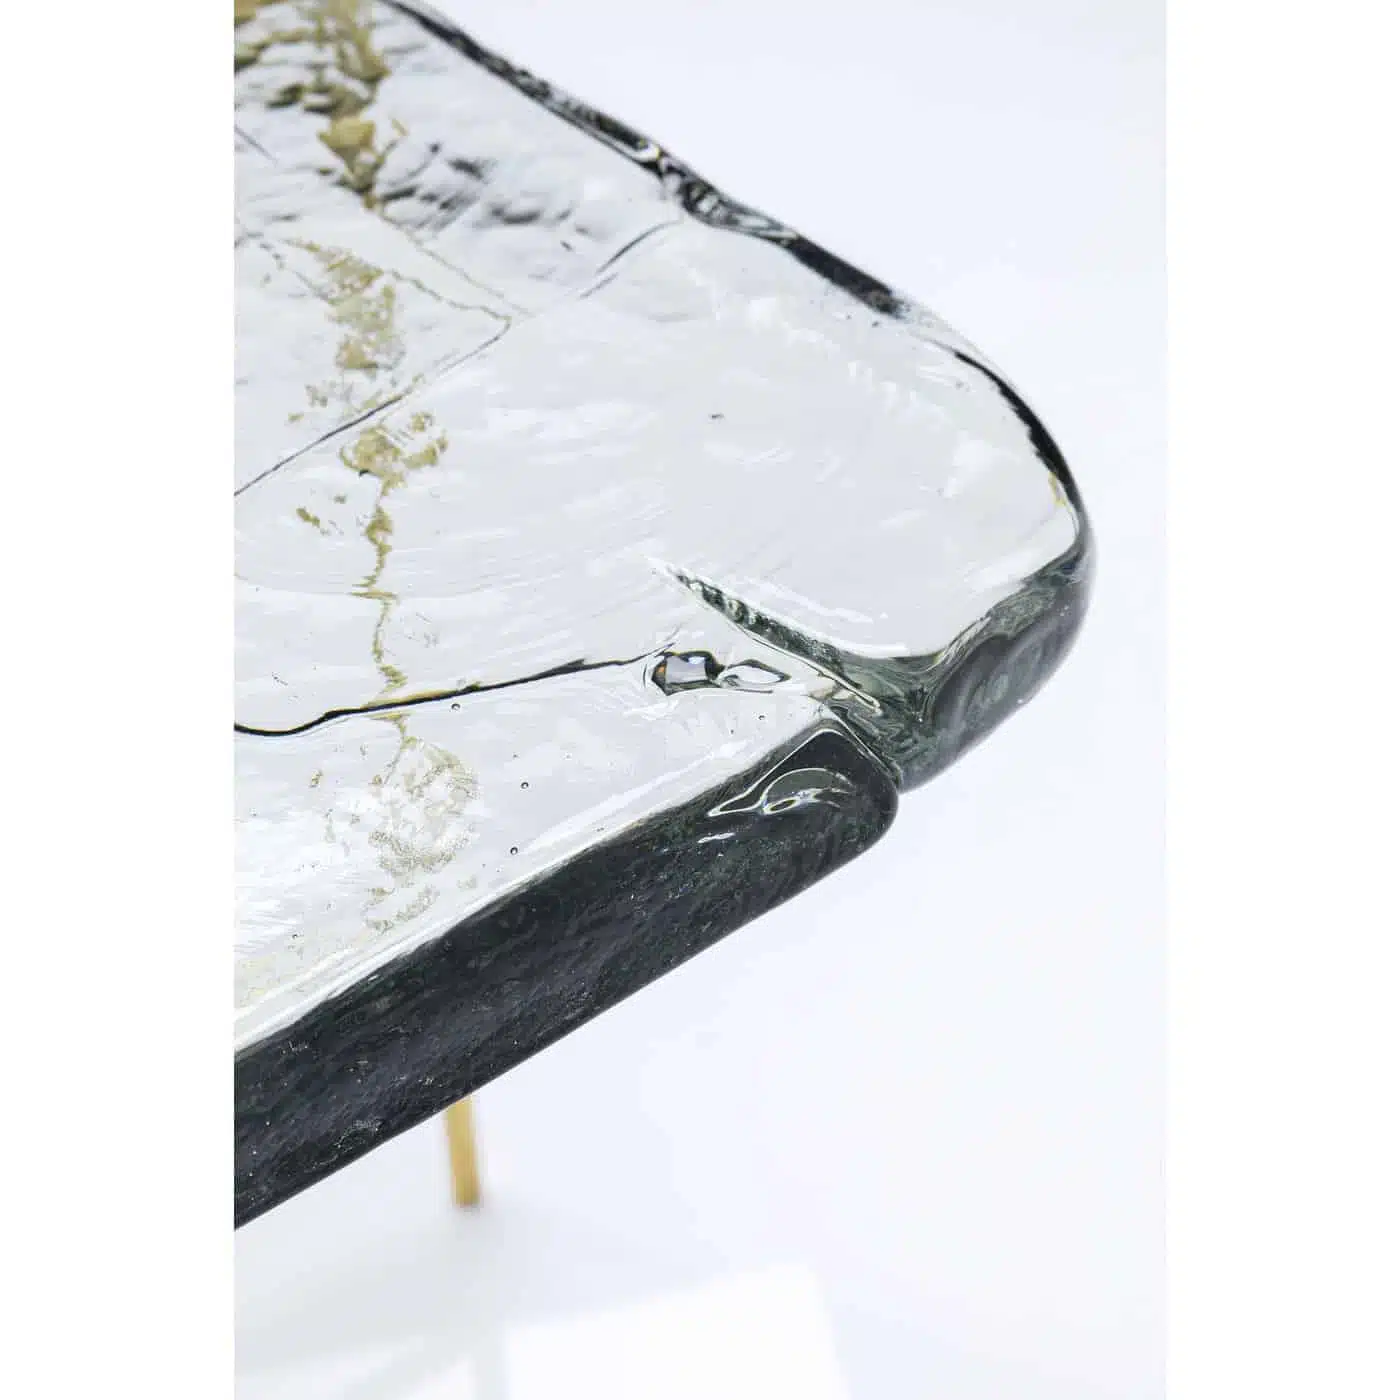 Table basse Ice 63x46cm pieds dorés Kare Design